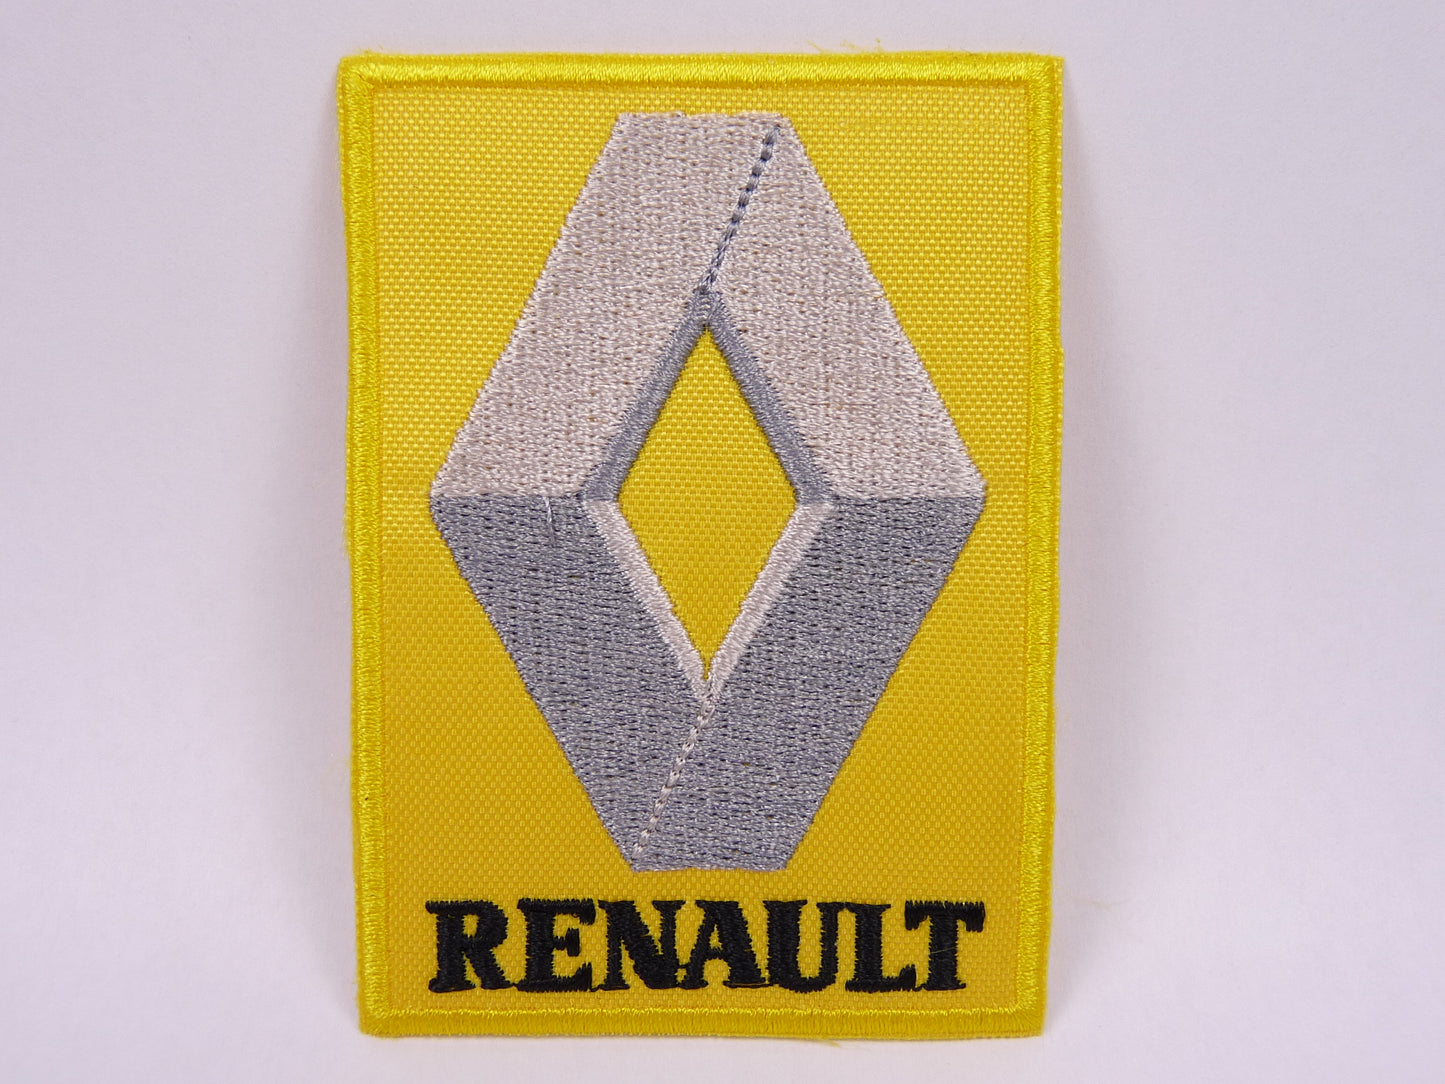 PTC120 Patch brodé thermocollé : logo Renault jaune largeur environ 6 cm hauteur environ 8.4 cm